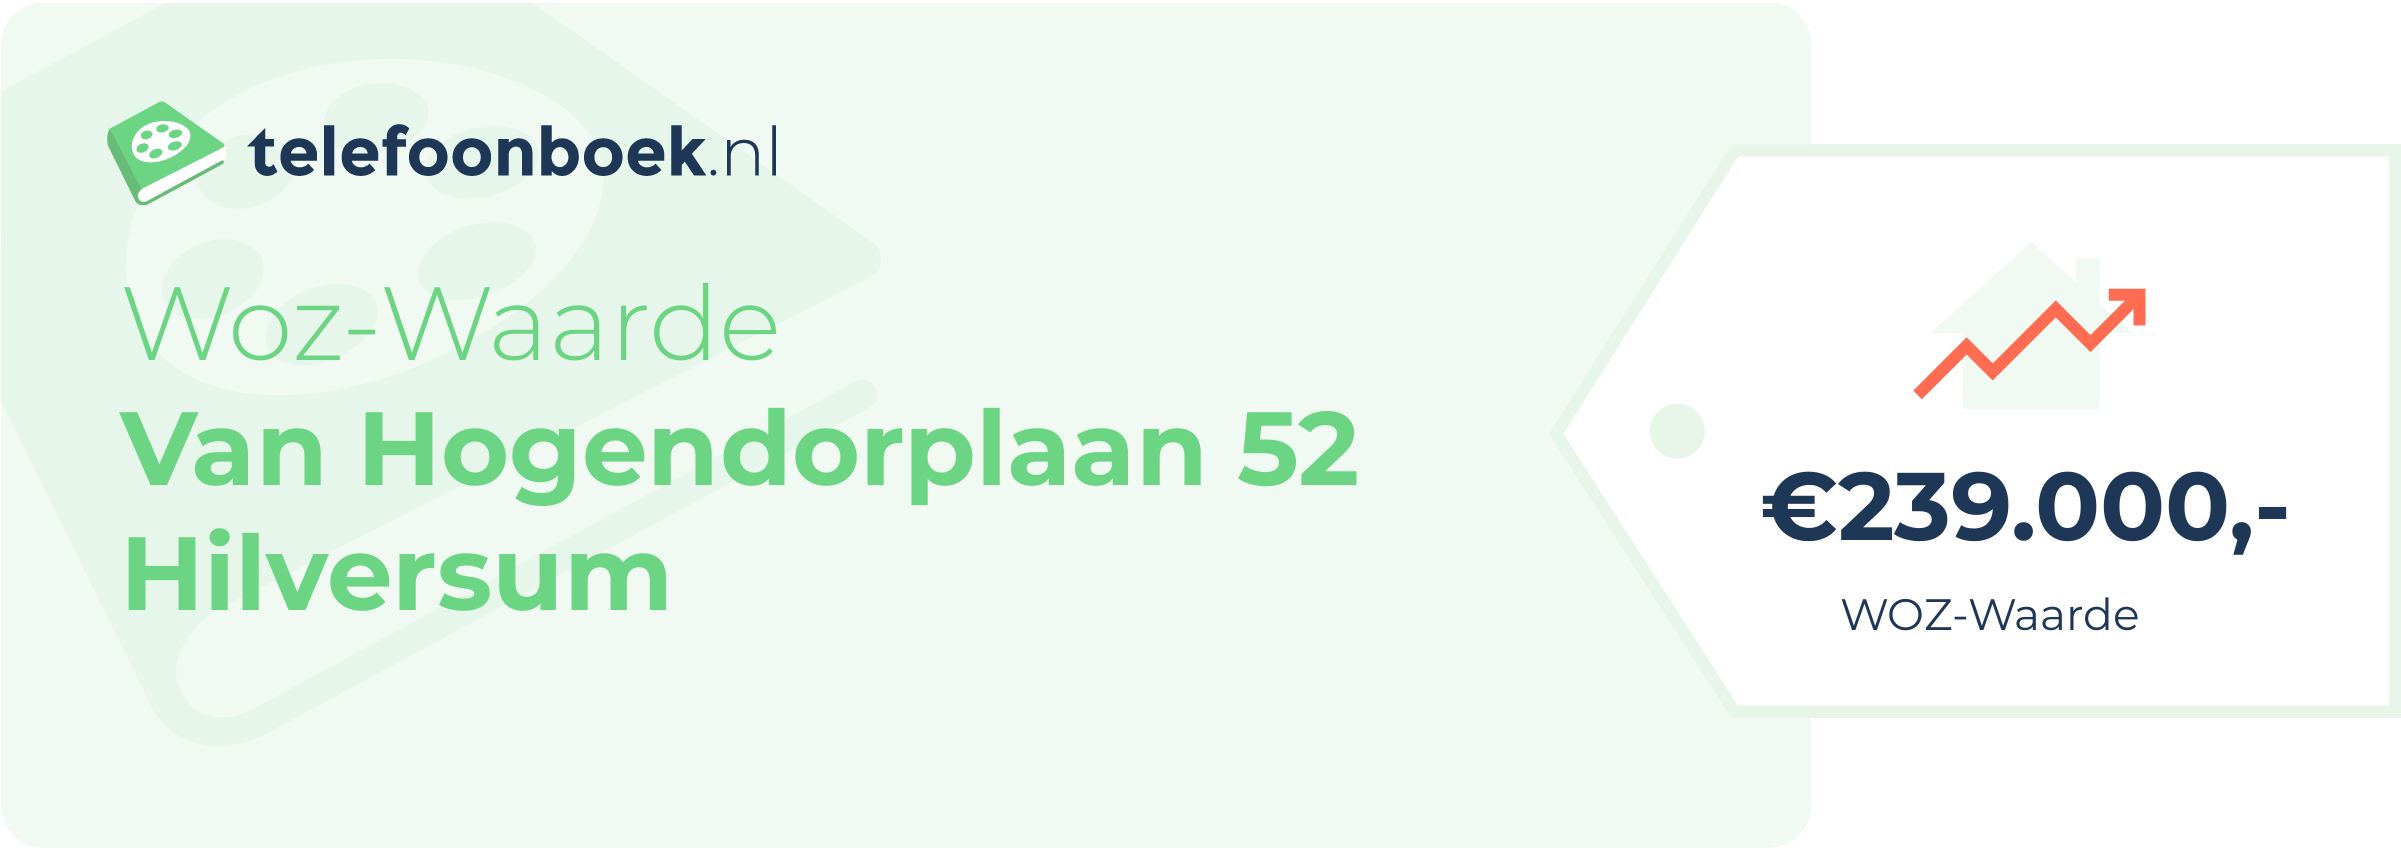 WOZ-waarde Van Hogendorplaan 52 Hilversum